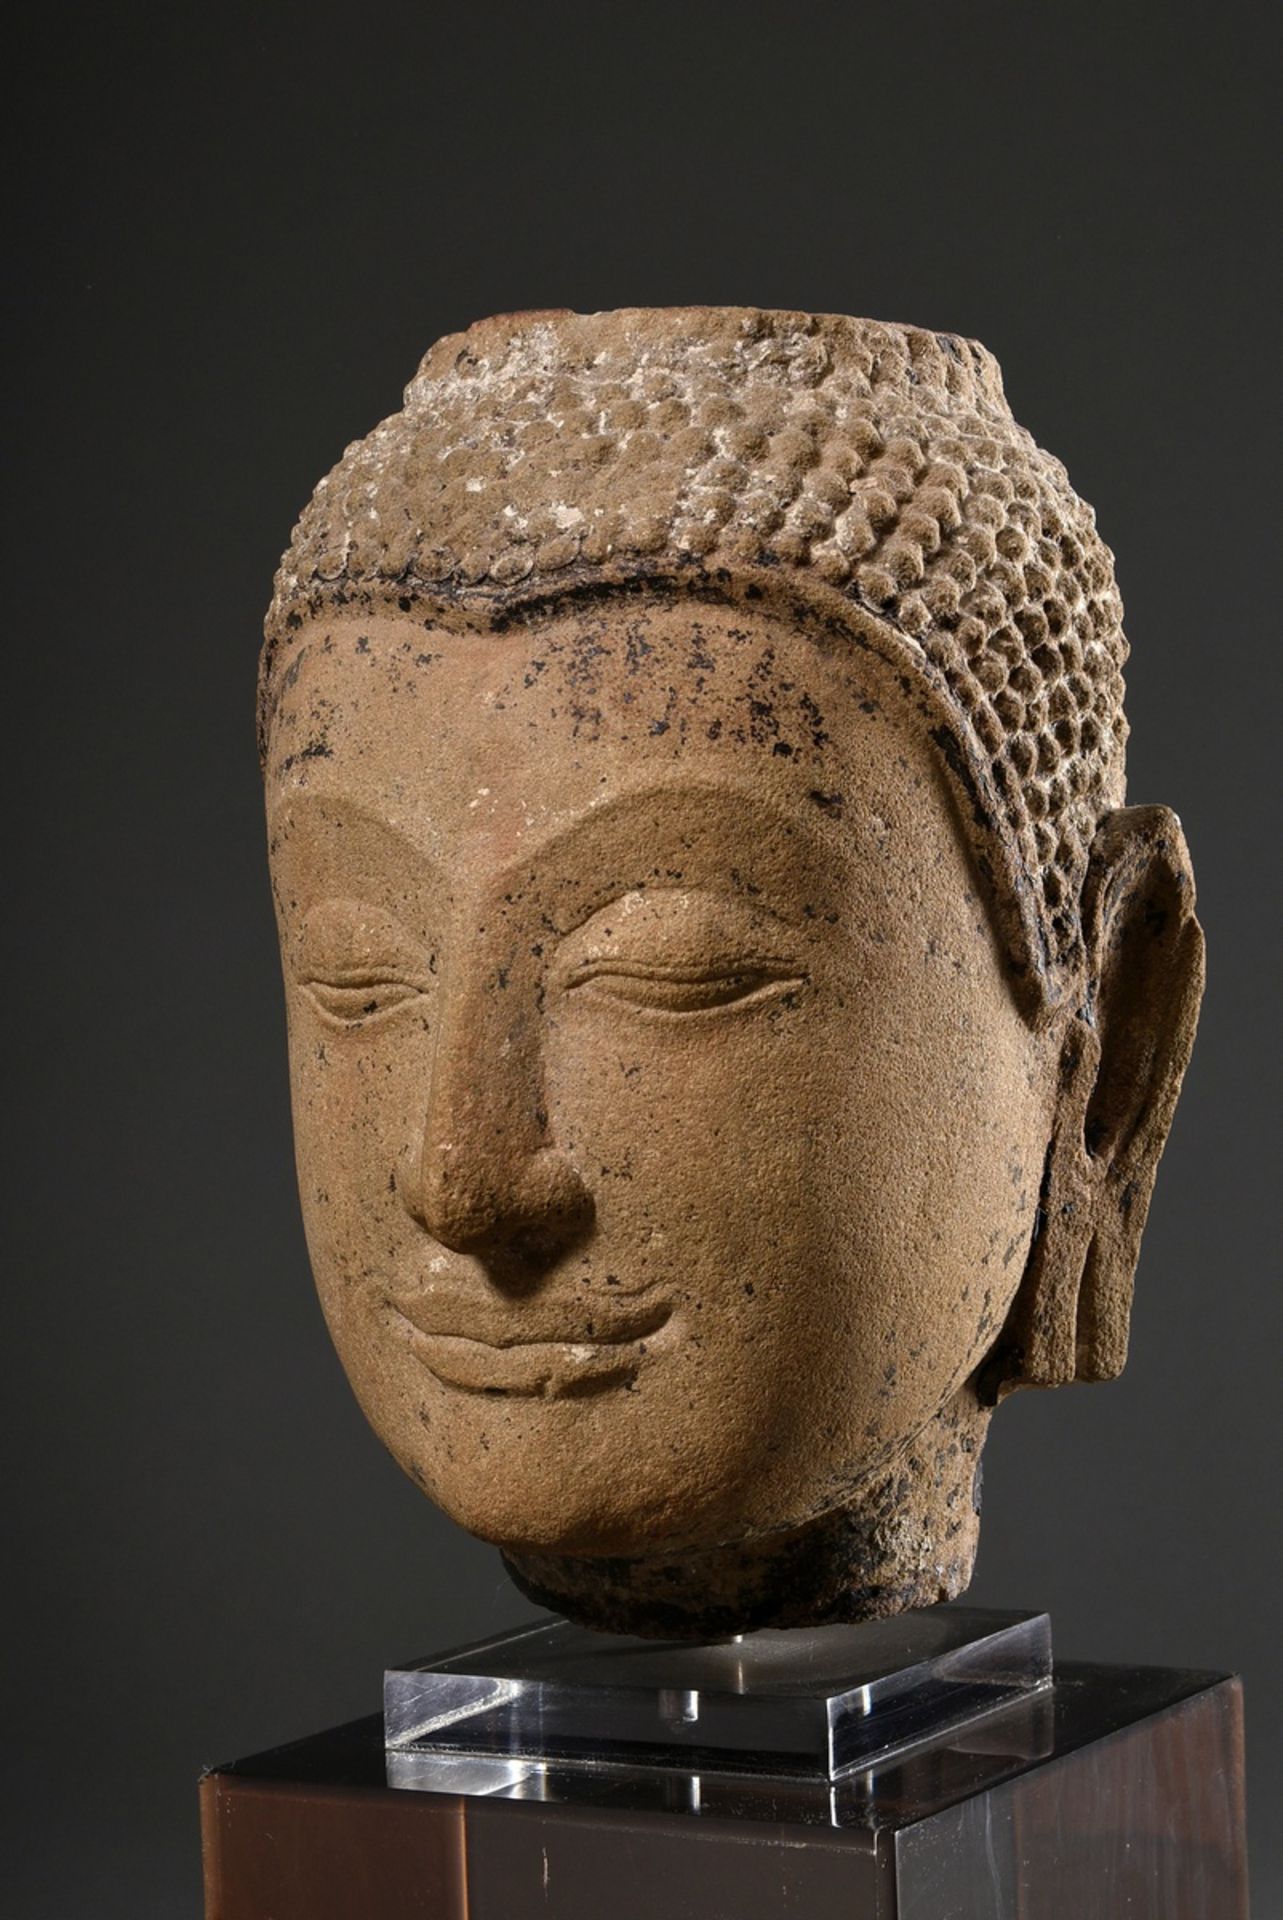 Ayutthaya Sandstein Buddha Kopf mit Resten von farbiger Bemalung, Thailand 15.-17. Jh., auf Plexigl - Bild 3 aus 7